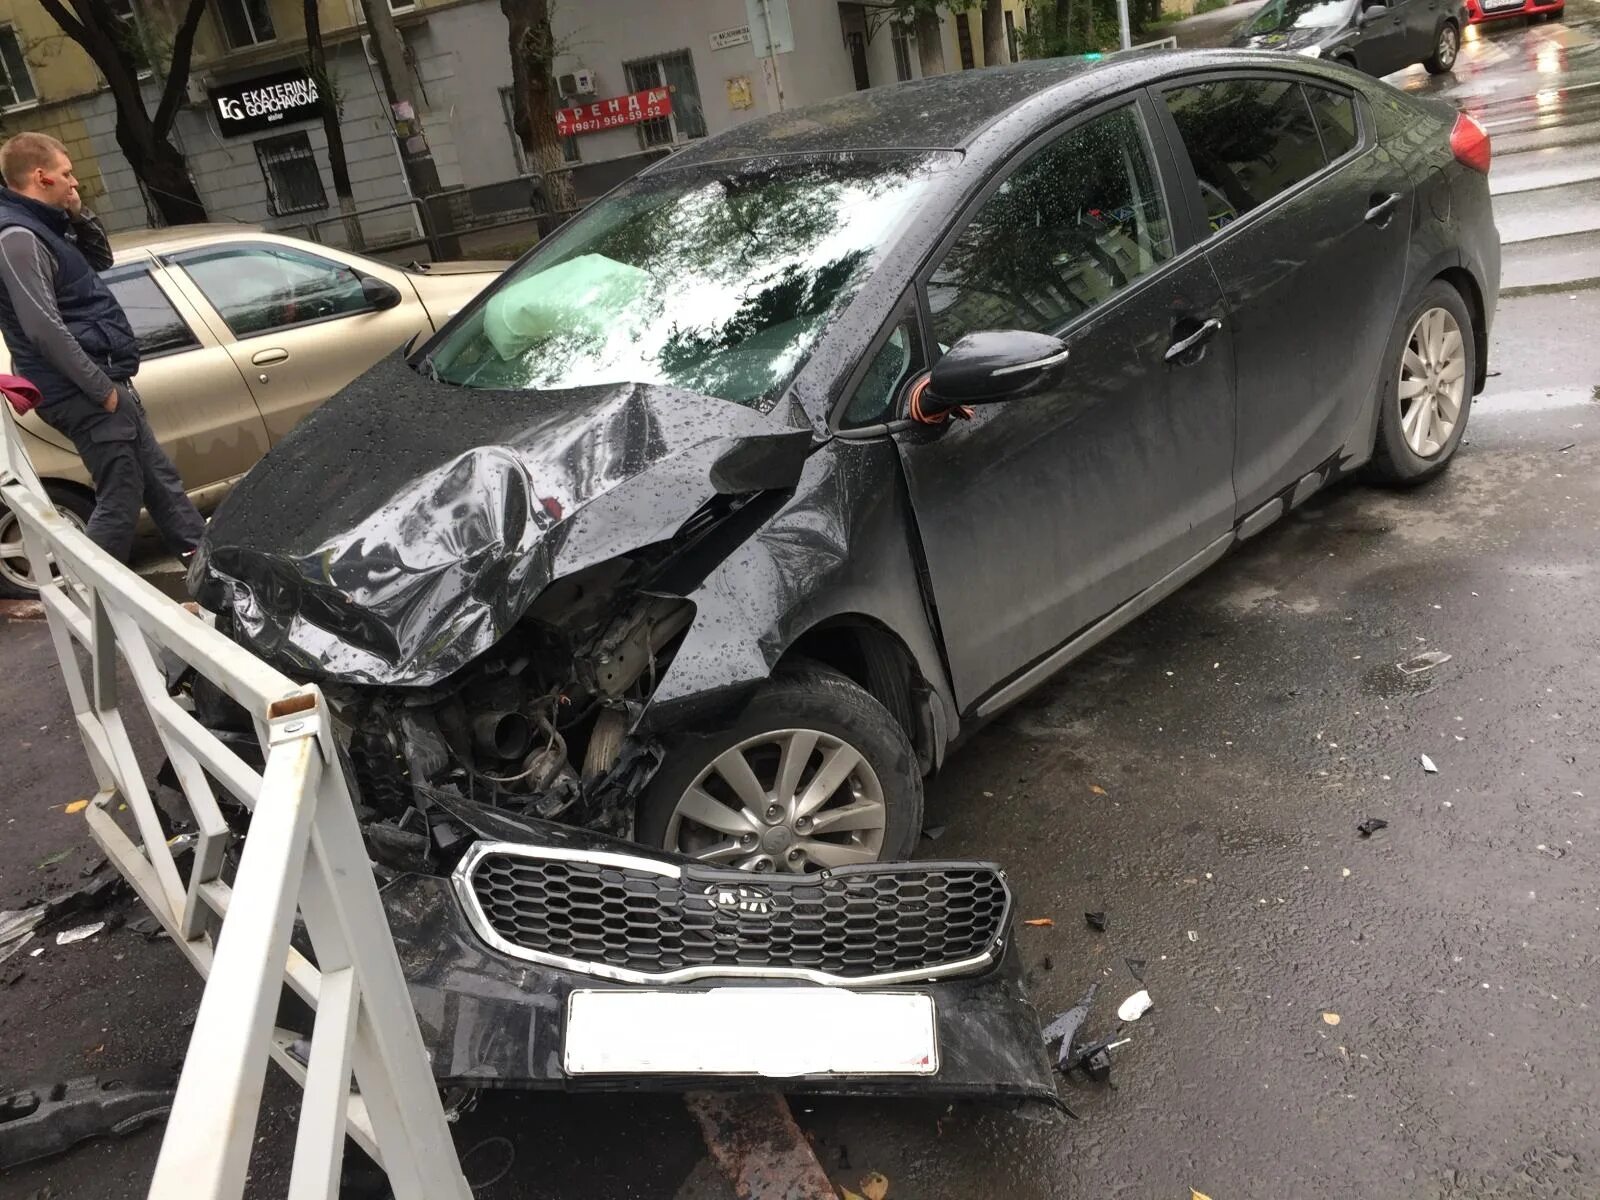 Показать разбитый. Разбитый Фиат. Фиат автомобиль разбитый. Авария на проспекте Масленникова в Самаре.